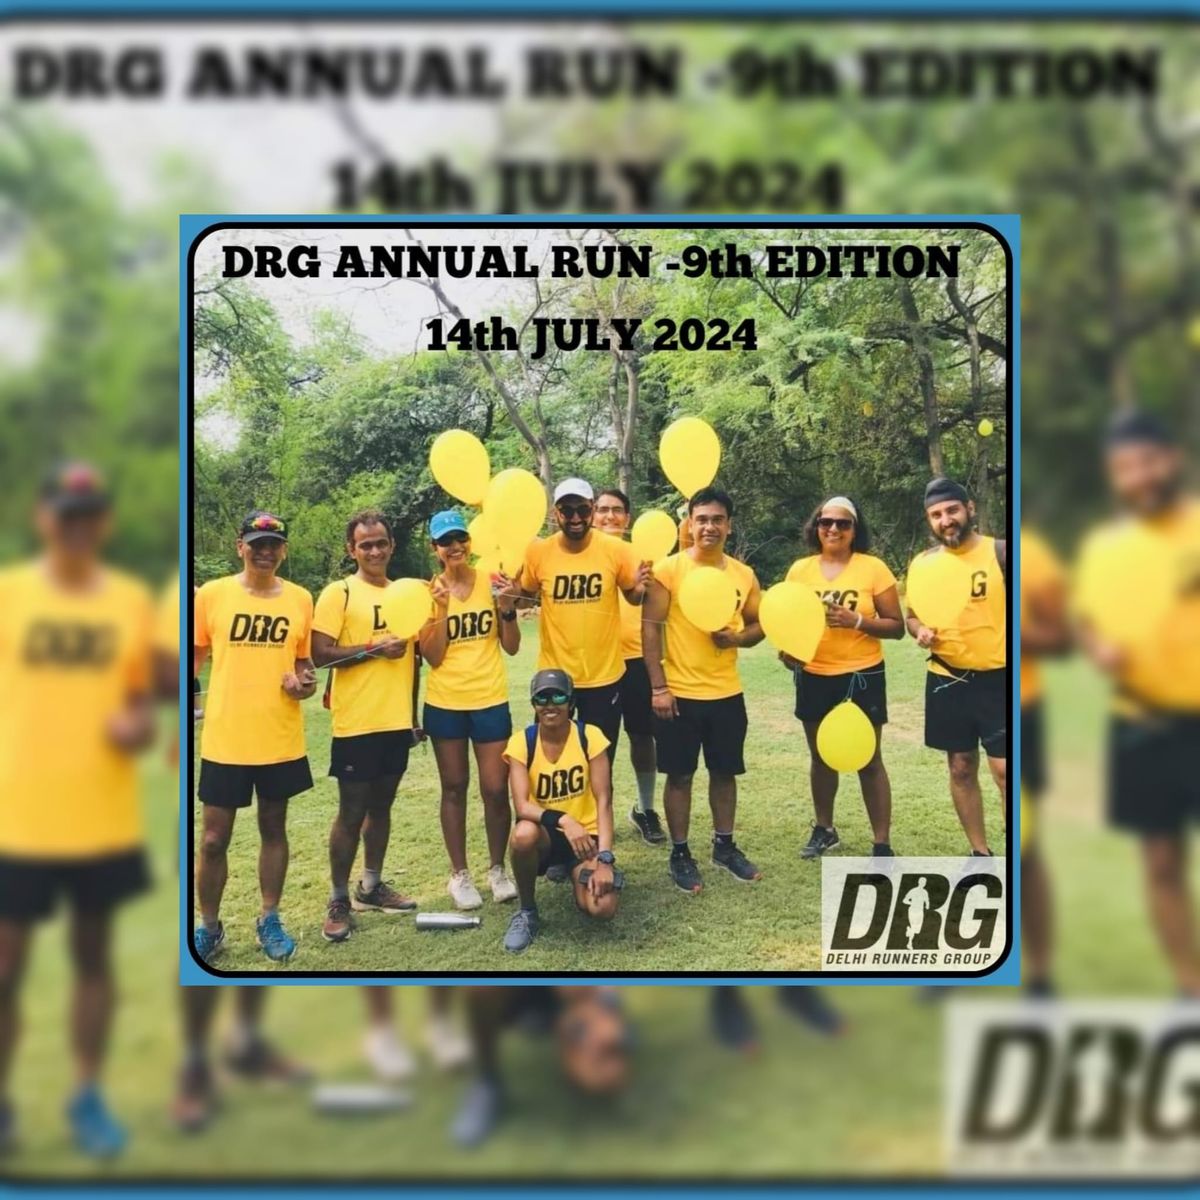 DRG Annual Run-9th Edition